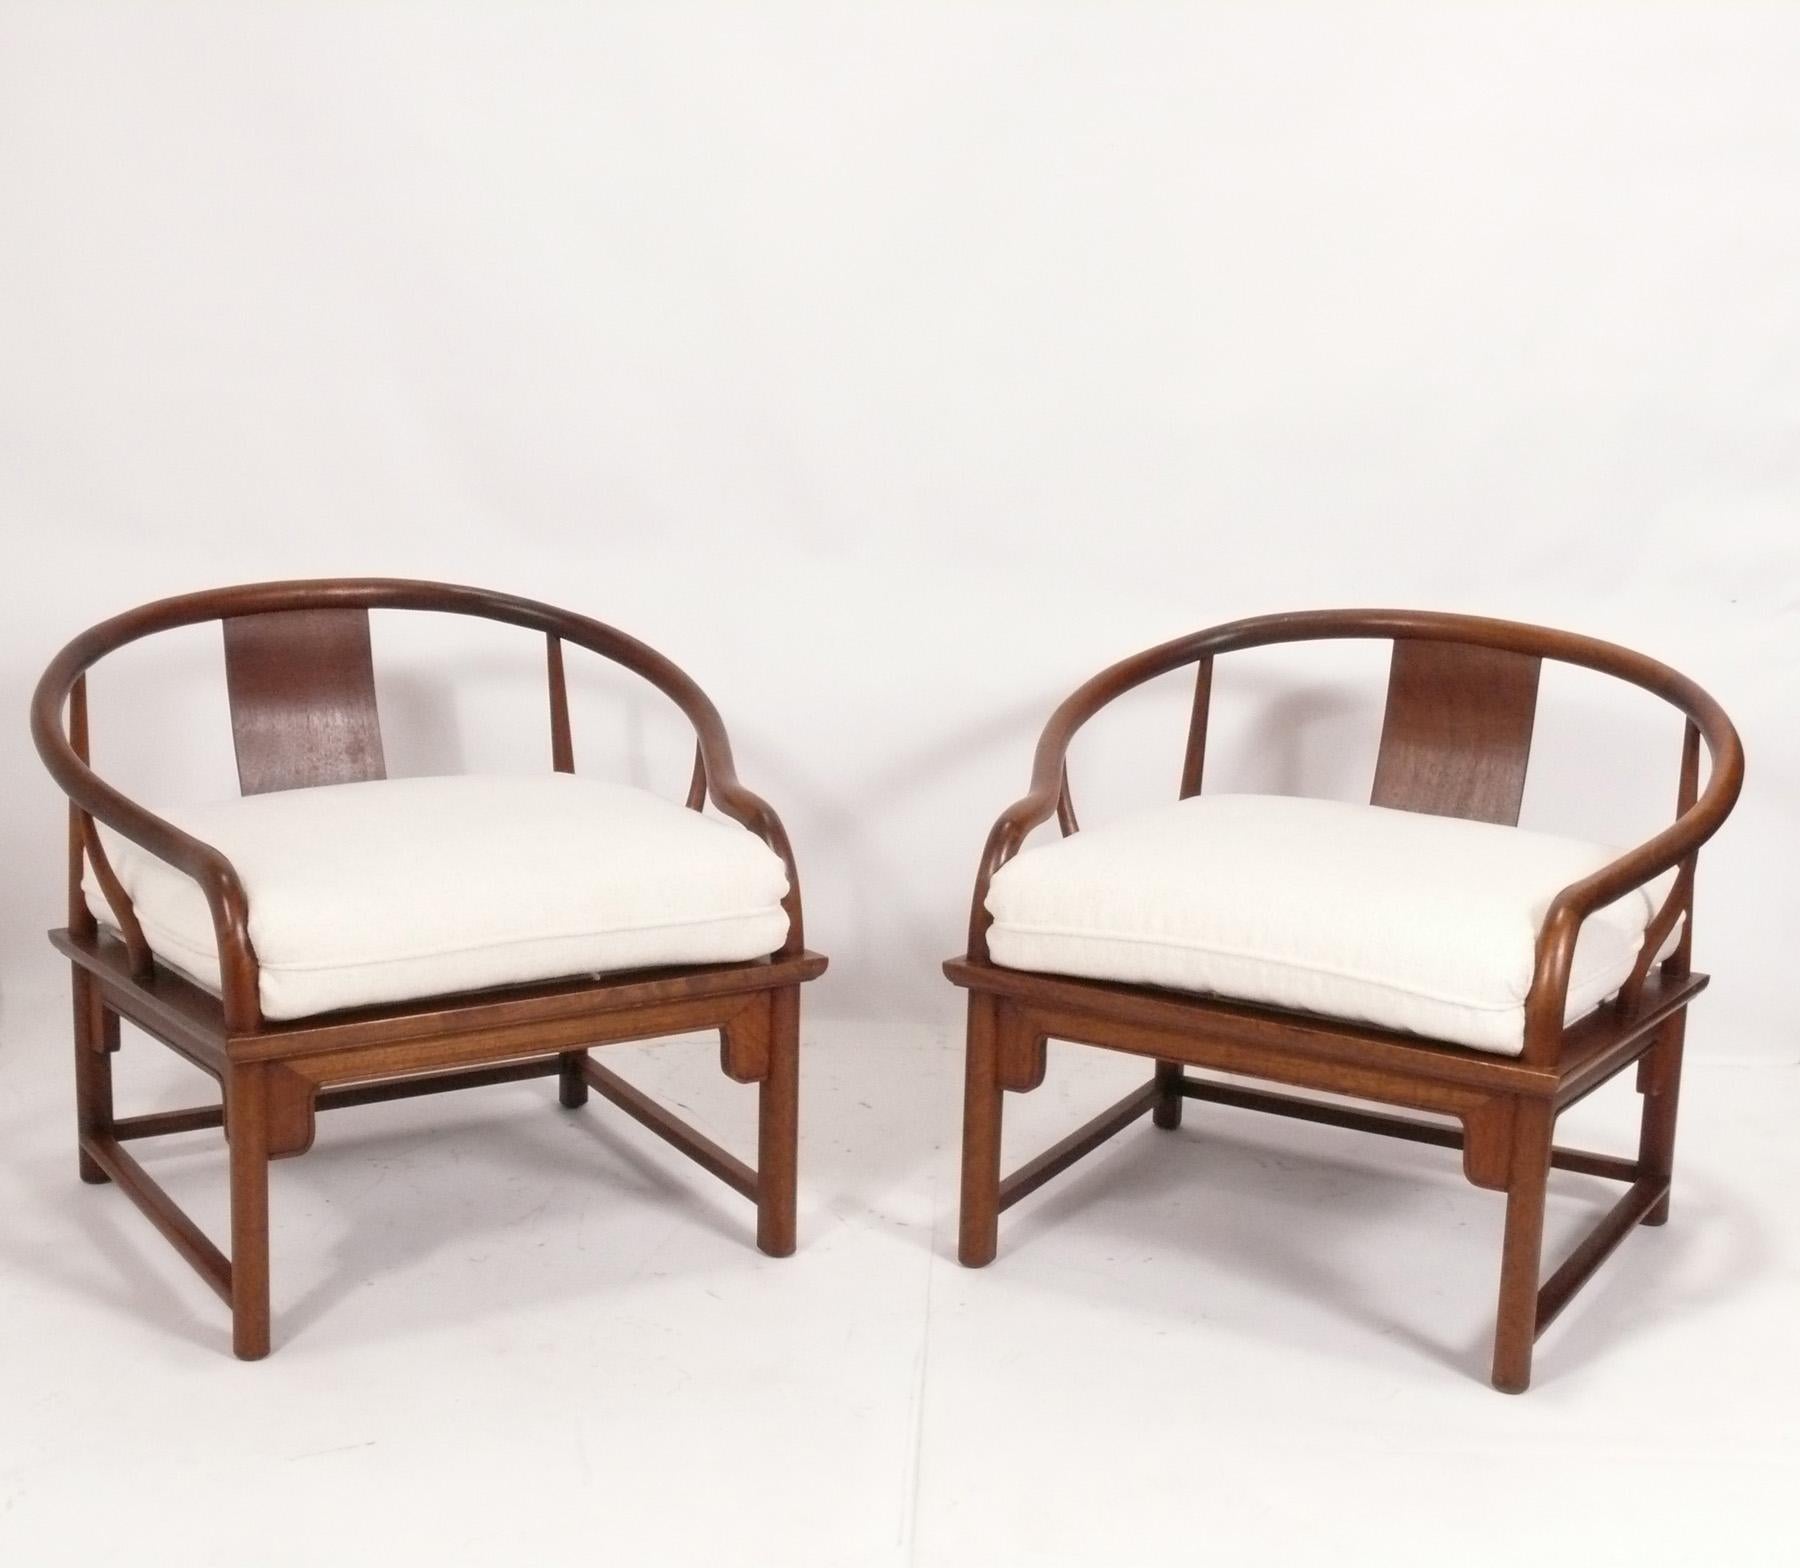 Geschwungenes Paar asiatisch inspirierter Stühle, entworfen von Michael Taylor für Baker's Far East Line, Amerika, ca. 1960er Jahre. Signiert mit Baker-Tag darunter. Sie wurden vor kurzem neu gepolstert in einer Plüsch Elfenbein Farbe Boucle. 